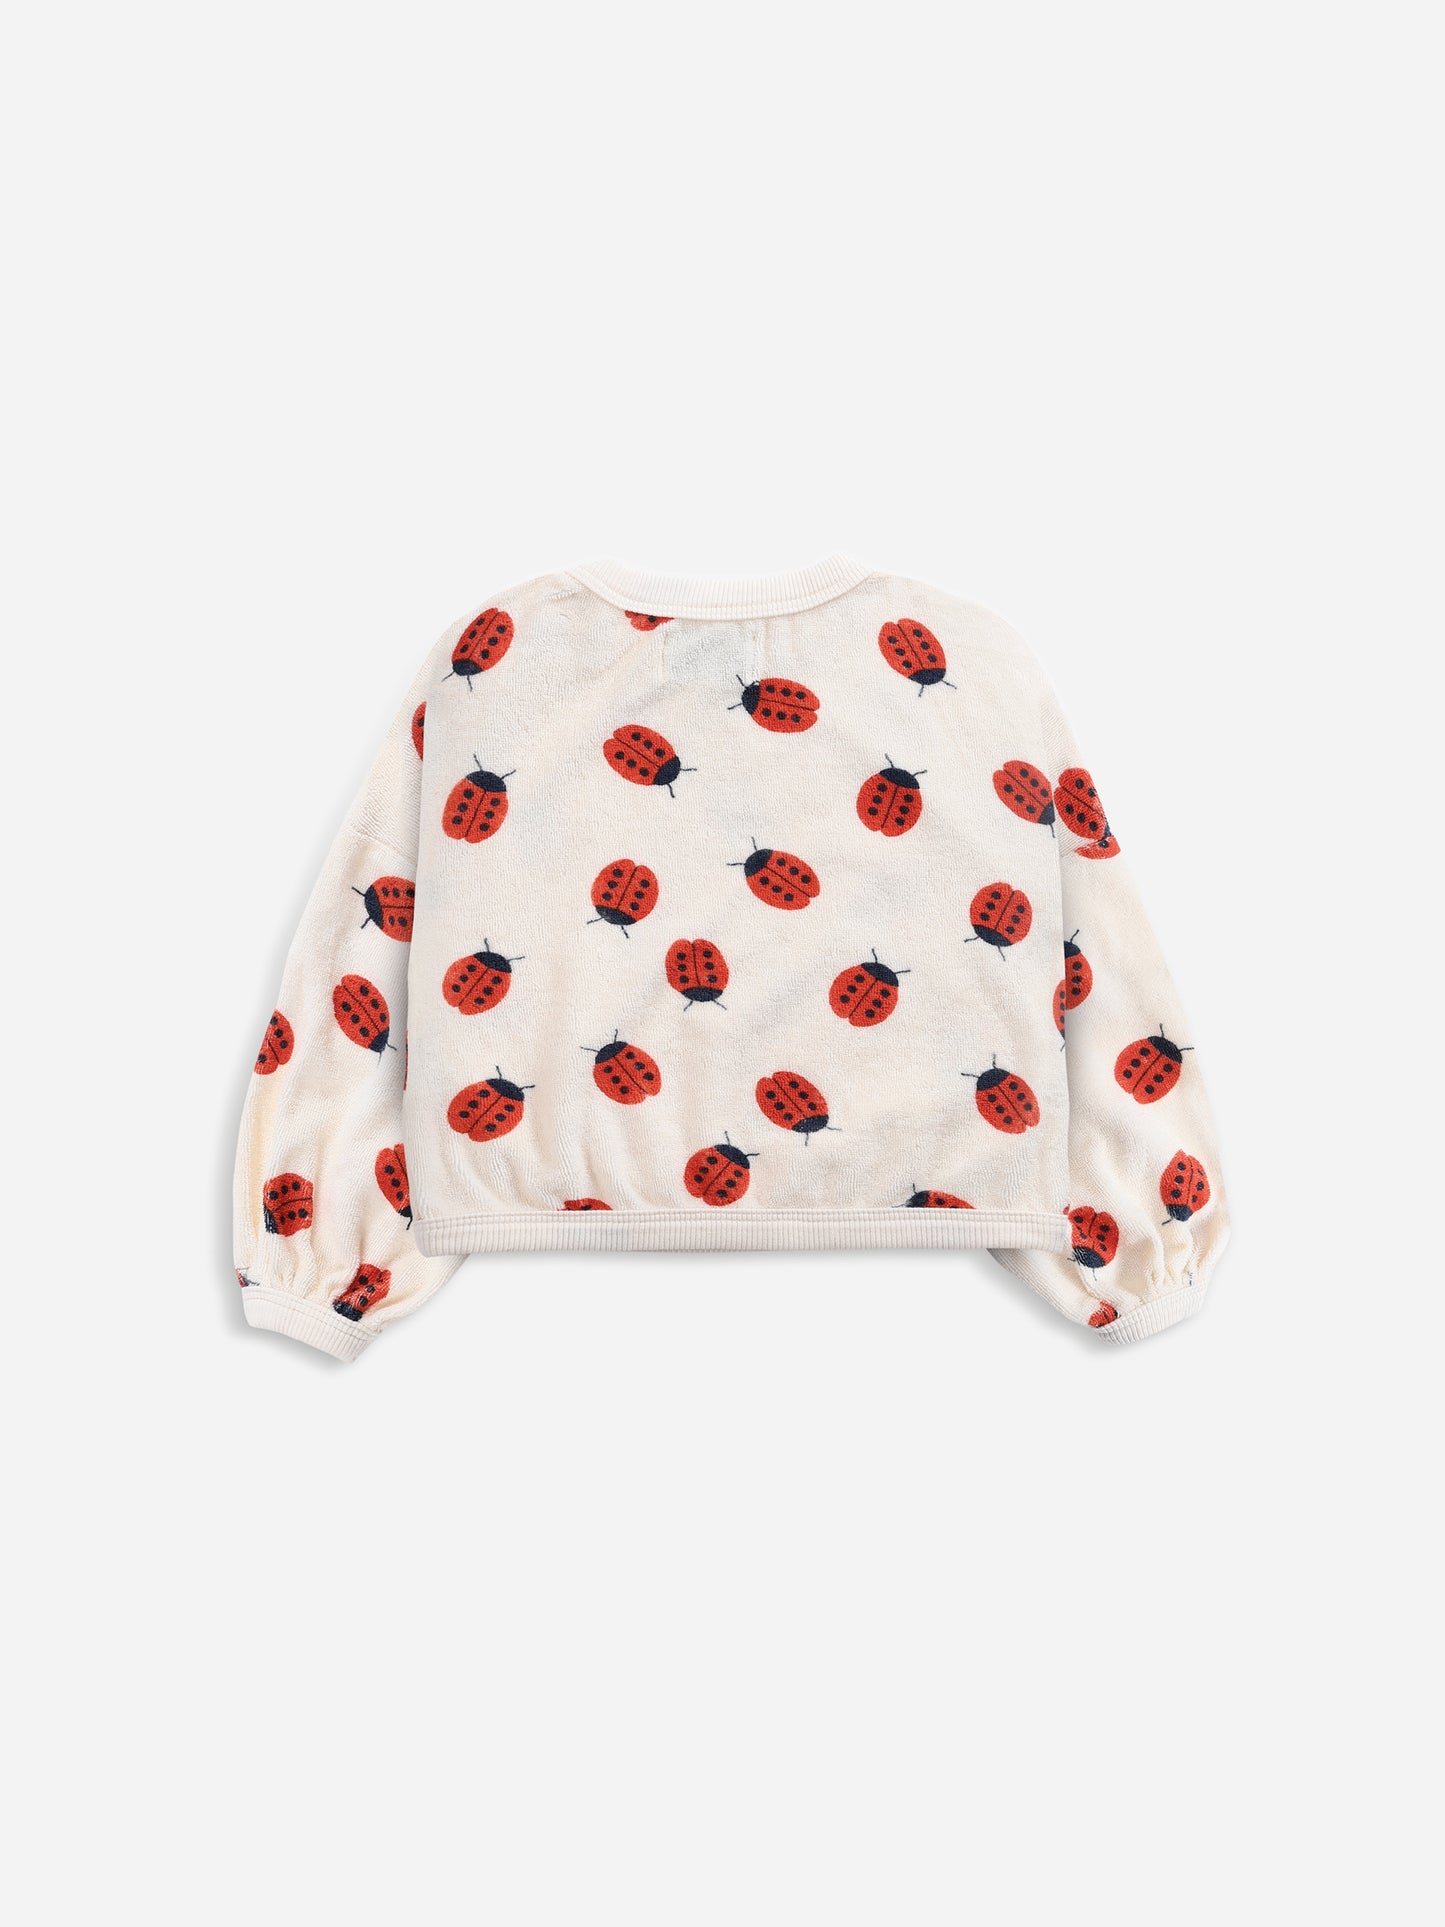 Ladybug All Over Sweatshirt